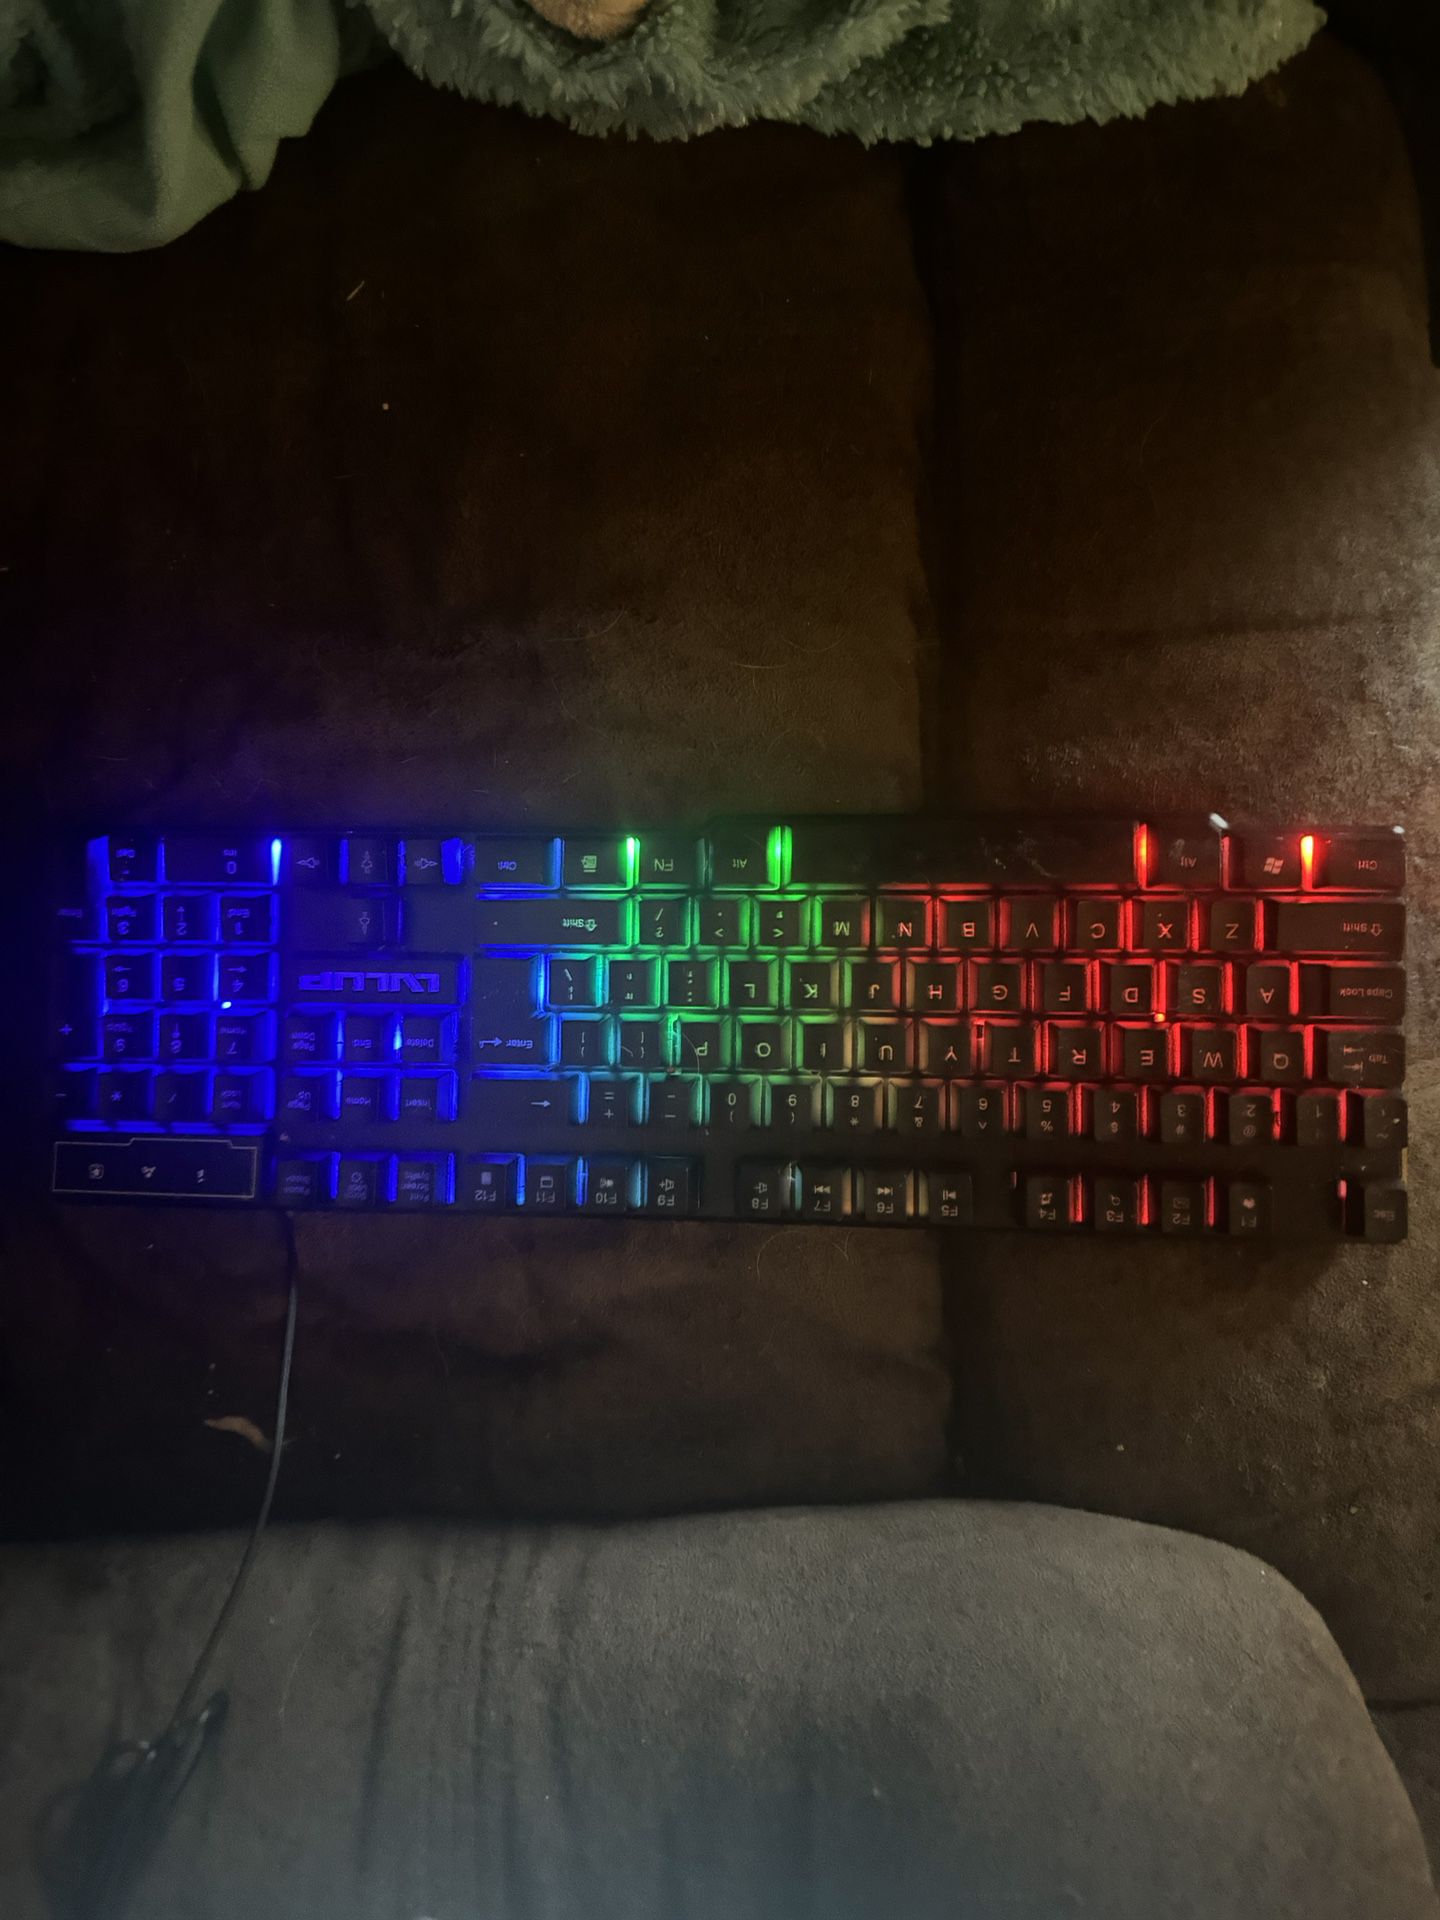 Light Up Gaming Keyboard 